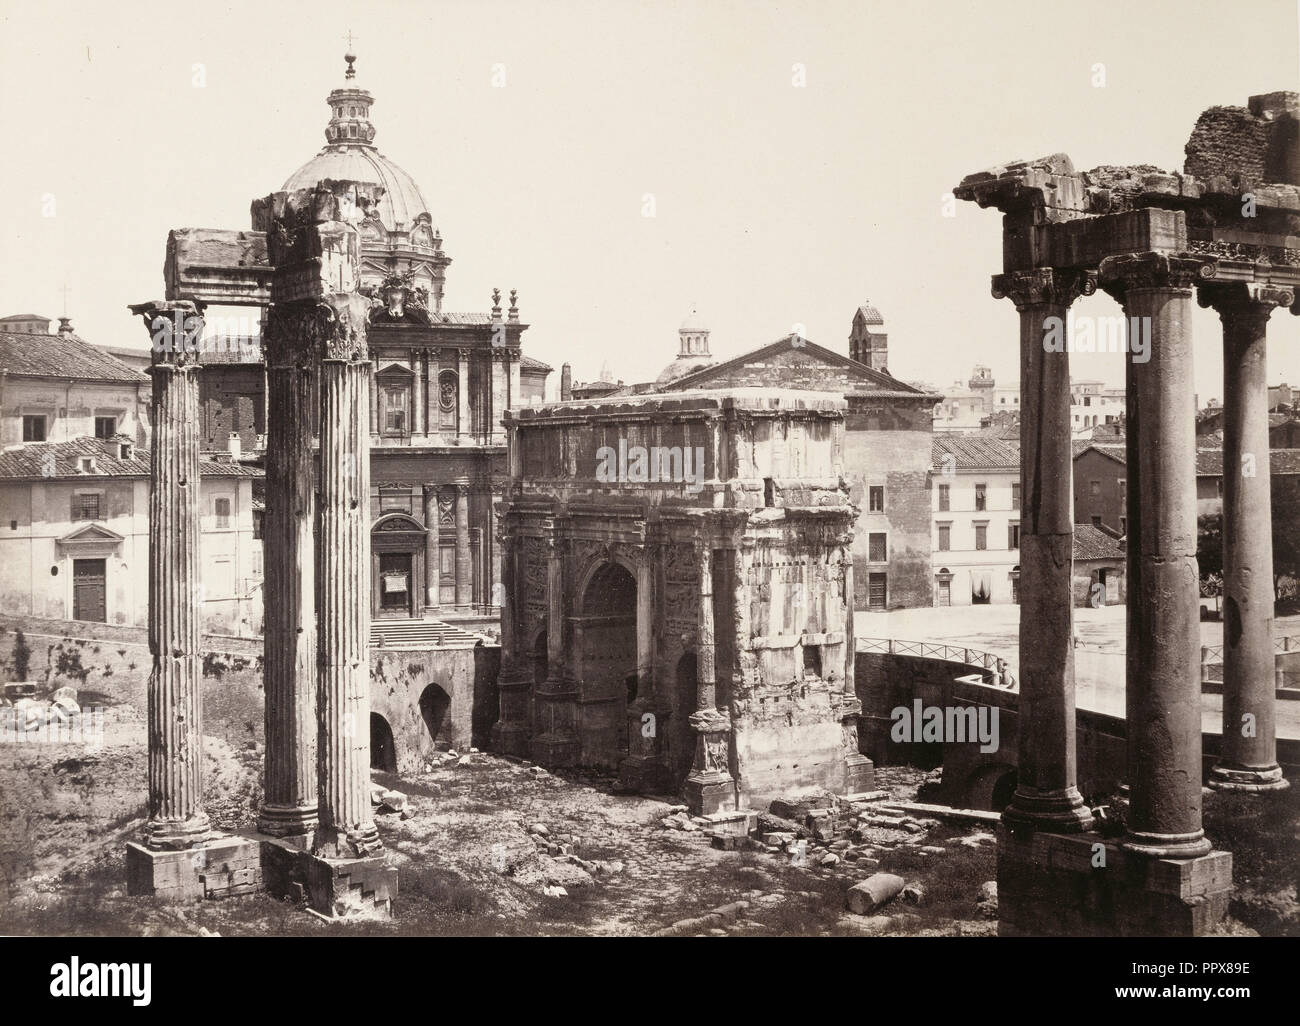 L'arc de Septimus et temple de Vespasien, Rome, Rome, Italie, vers 1860 - 1870, à l'albumine argentique Banque D'Images